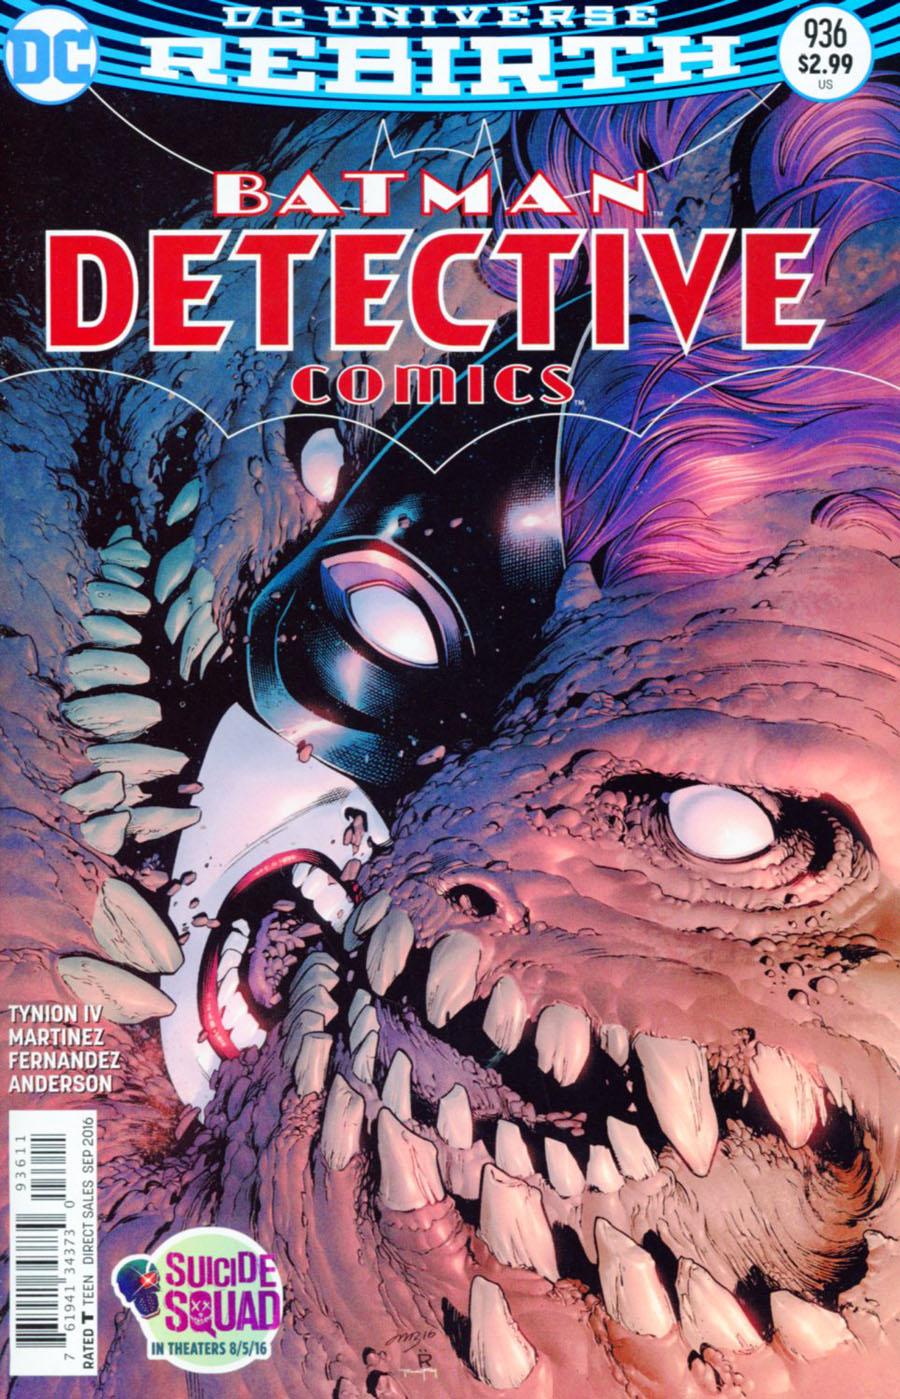 Detective Comics Vol. 2 #936